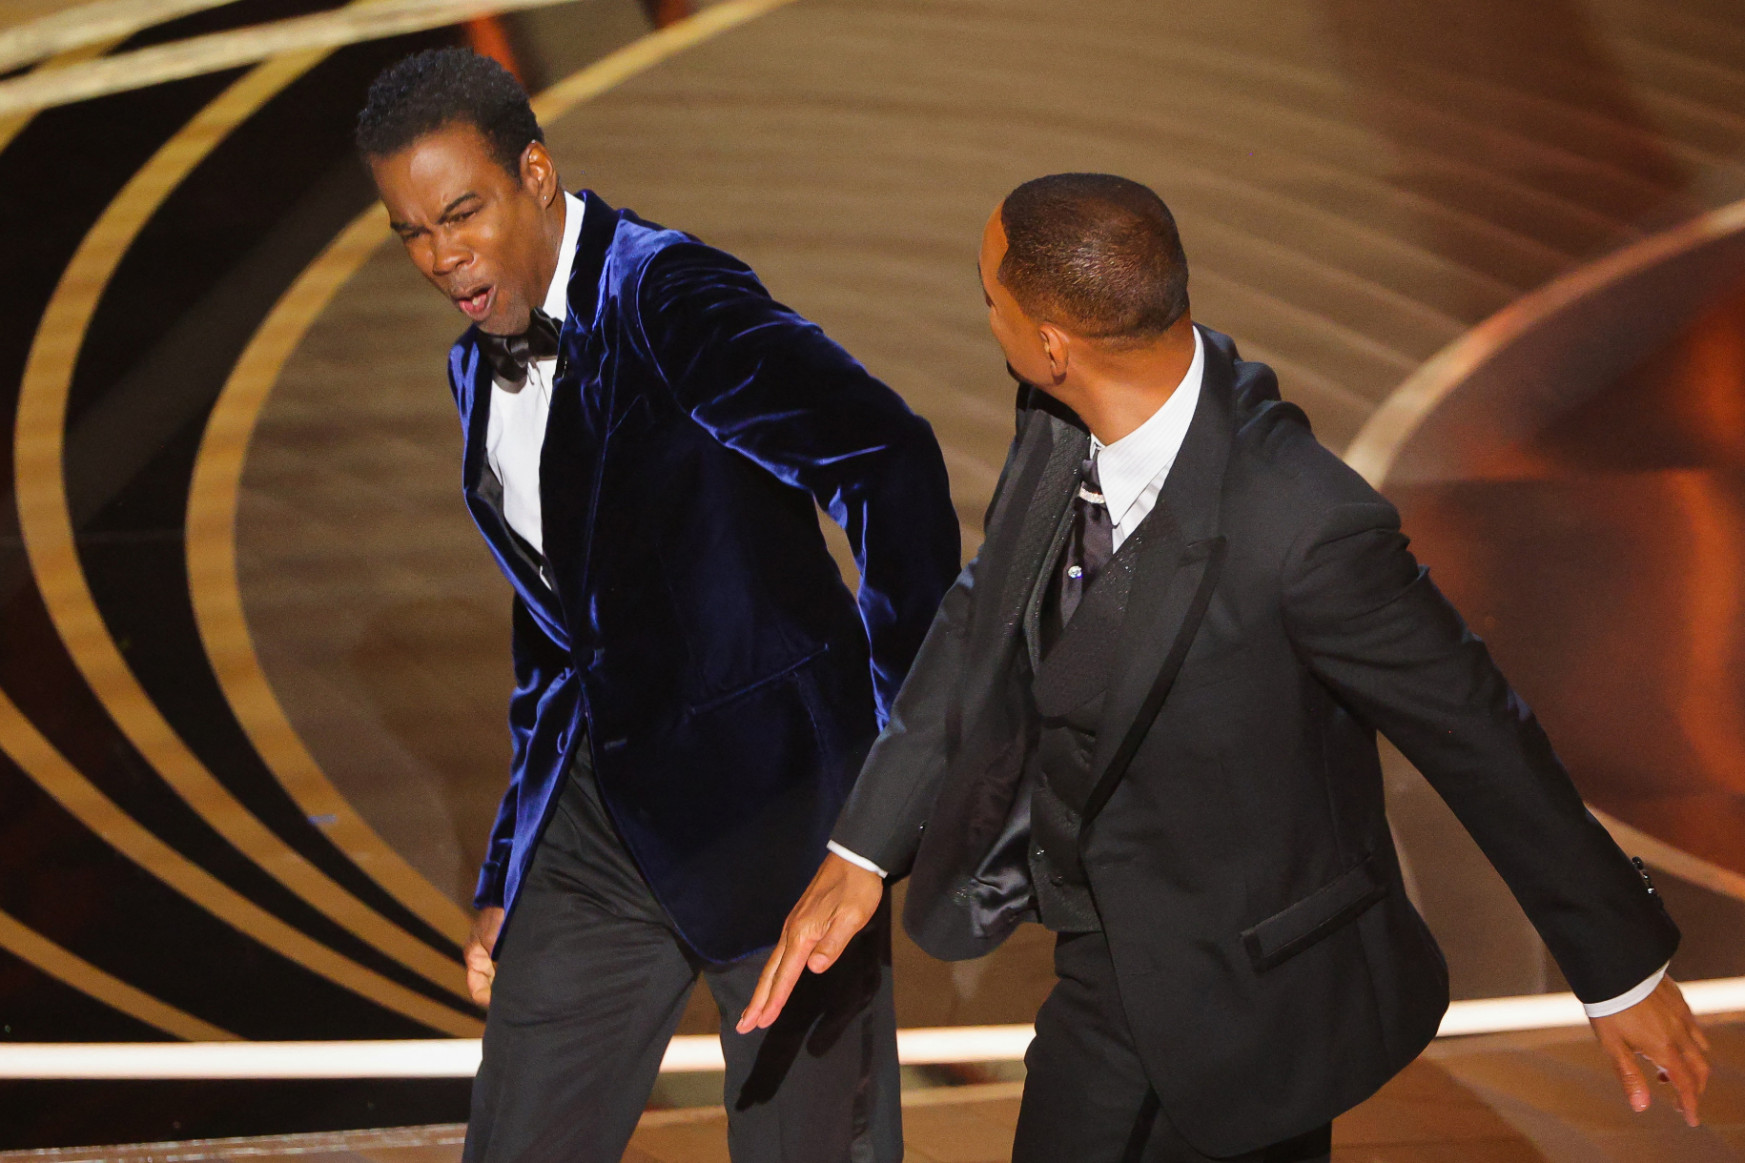 Botrány az Oscar-gálán: Will Smith megütötte Chris Rockot, aztán élő adásban káromkodott